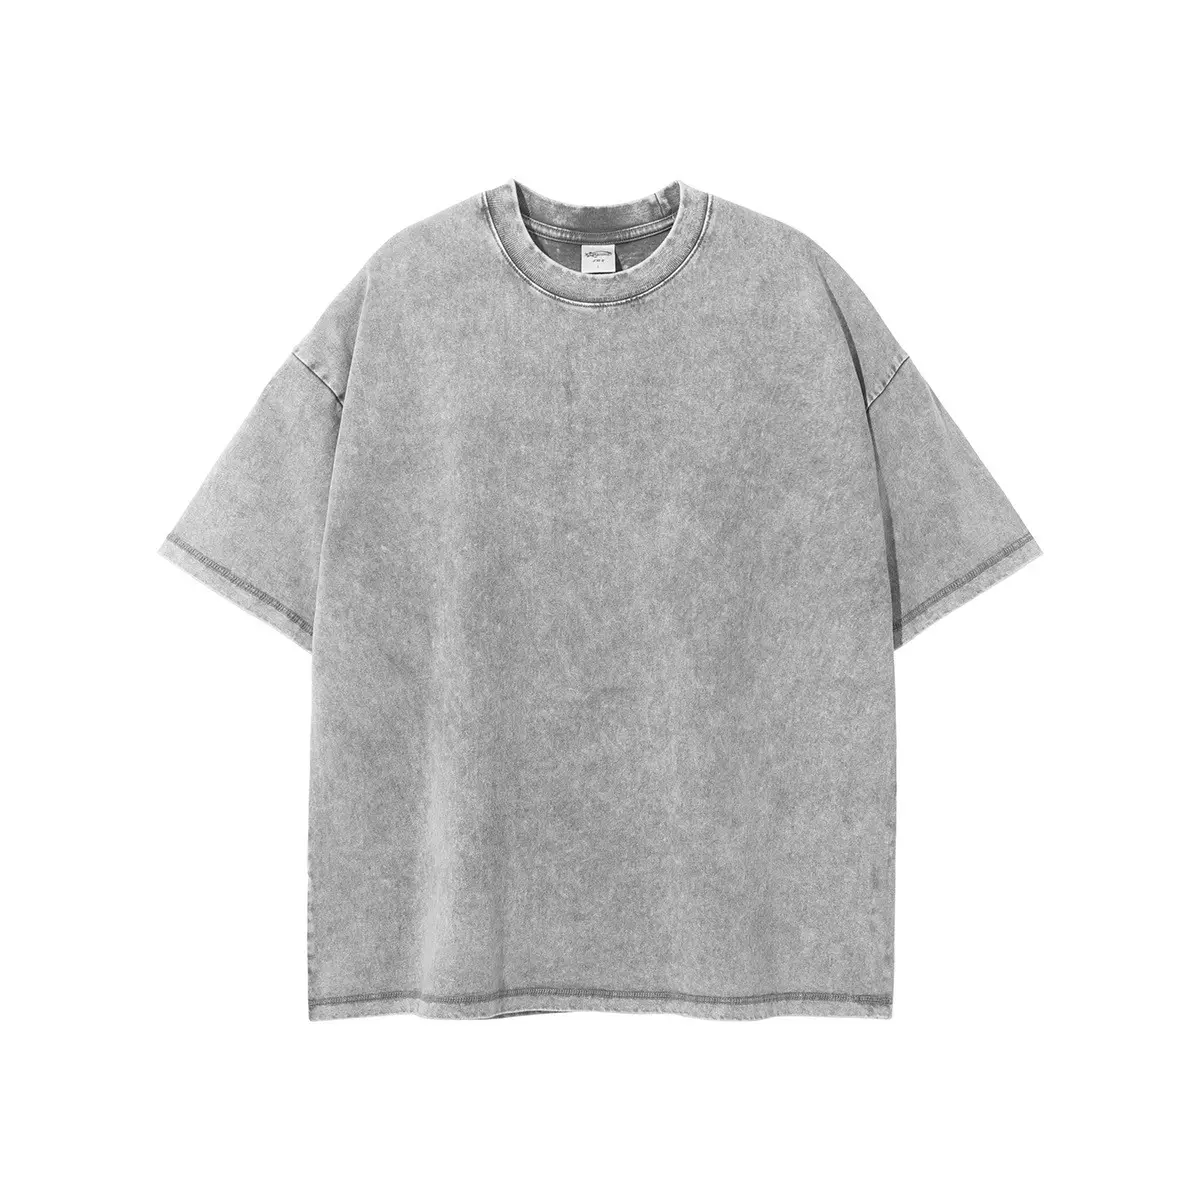 T-shirt da uomo sbiadita con lavaggio acido diretto in fabbrica t-shirt in puro cotone casual girocollo sciolto stile europeo e americano